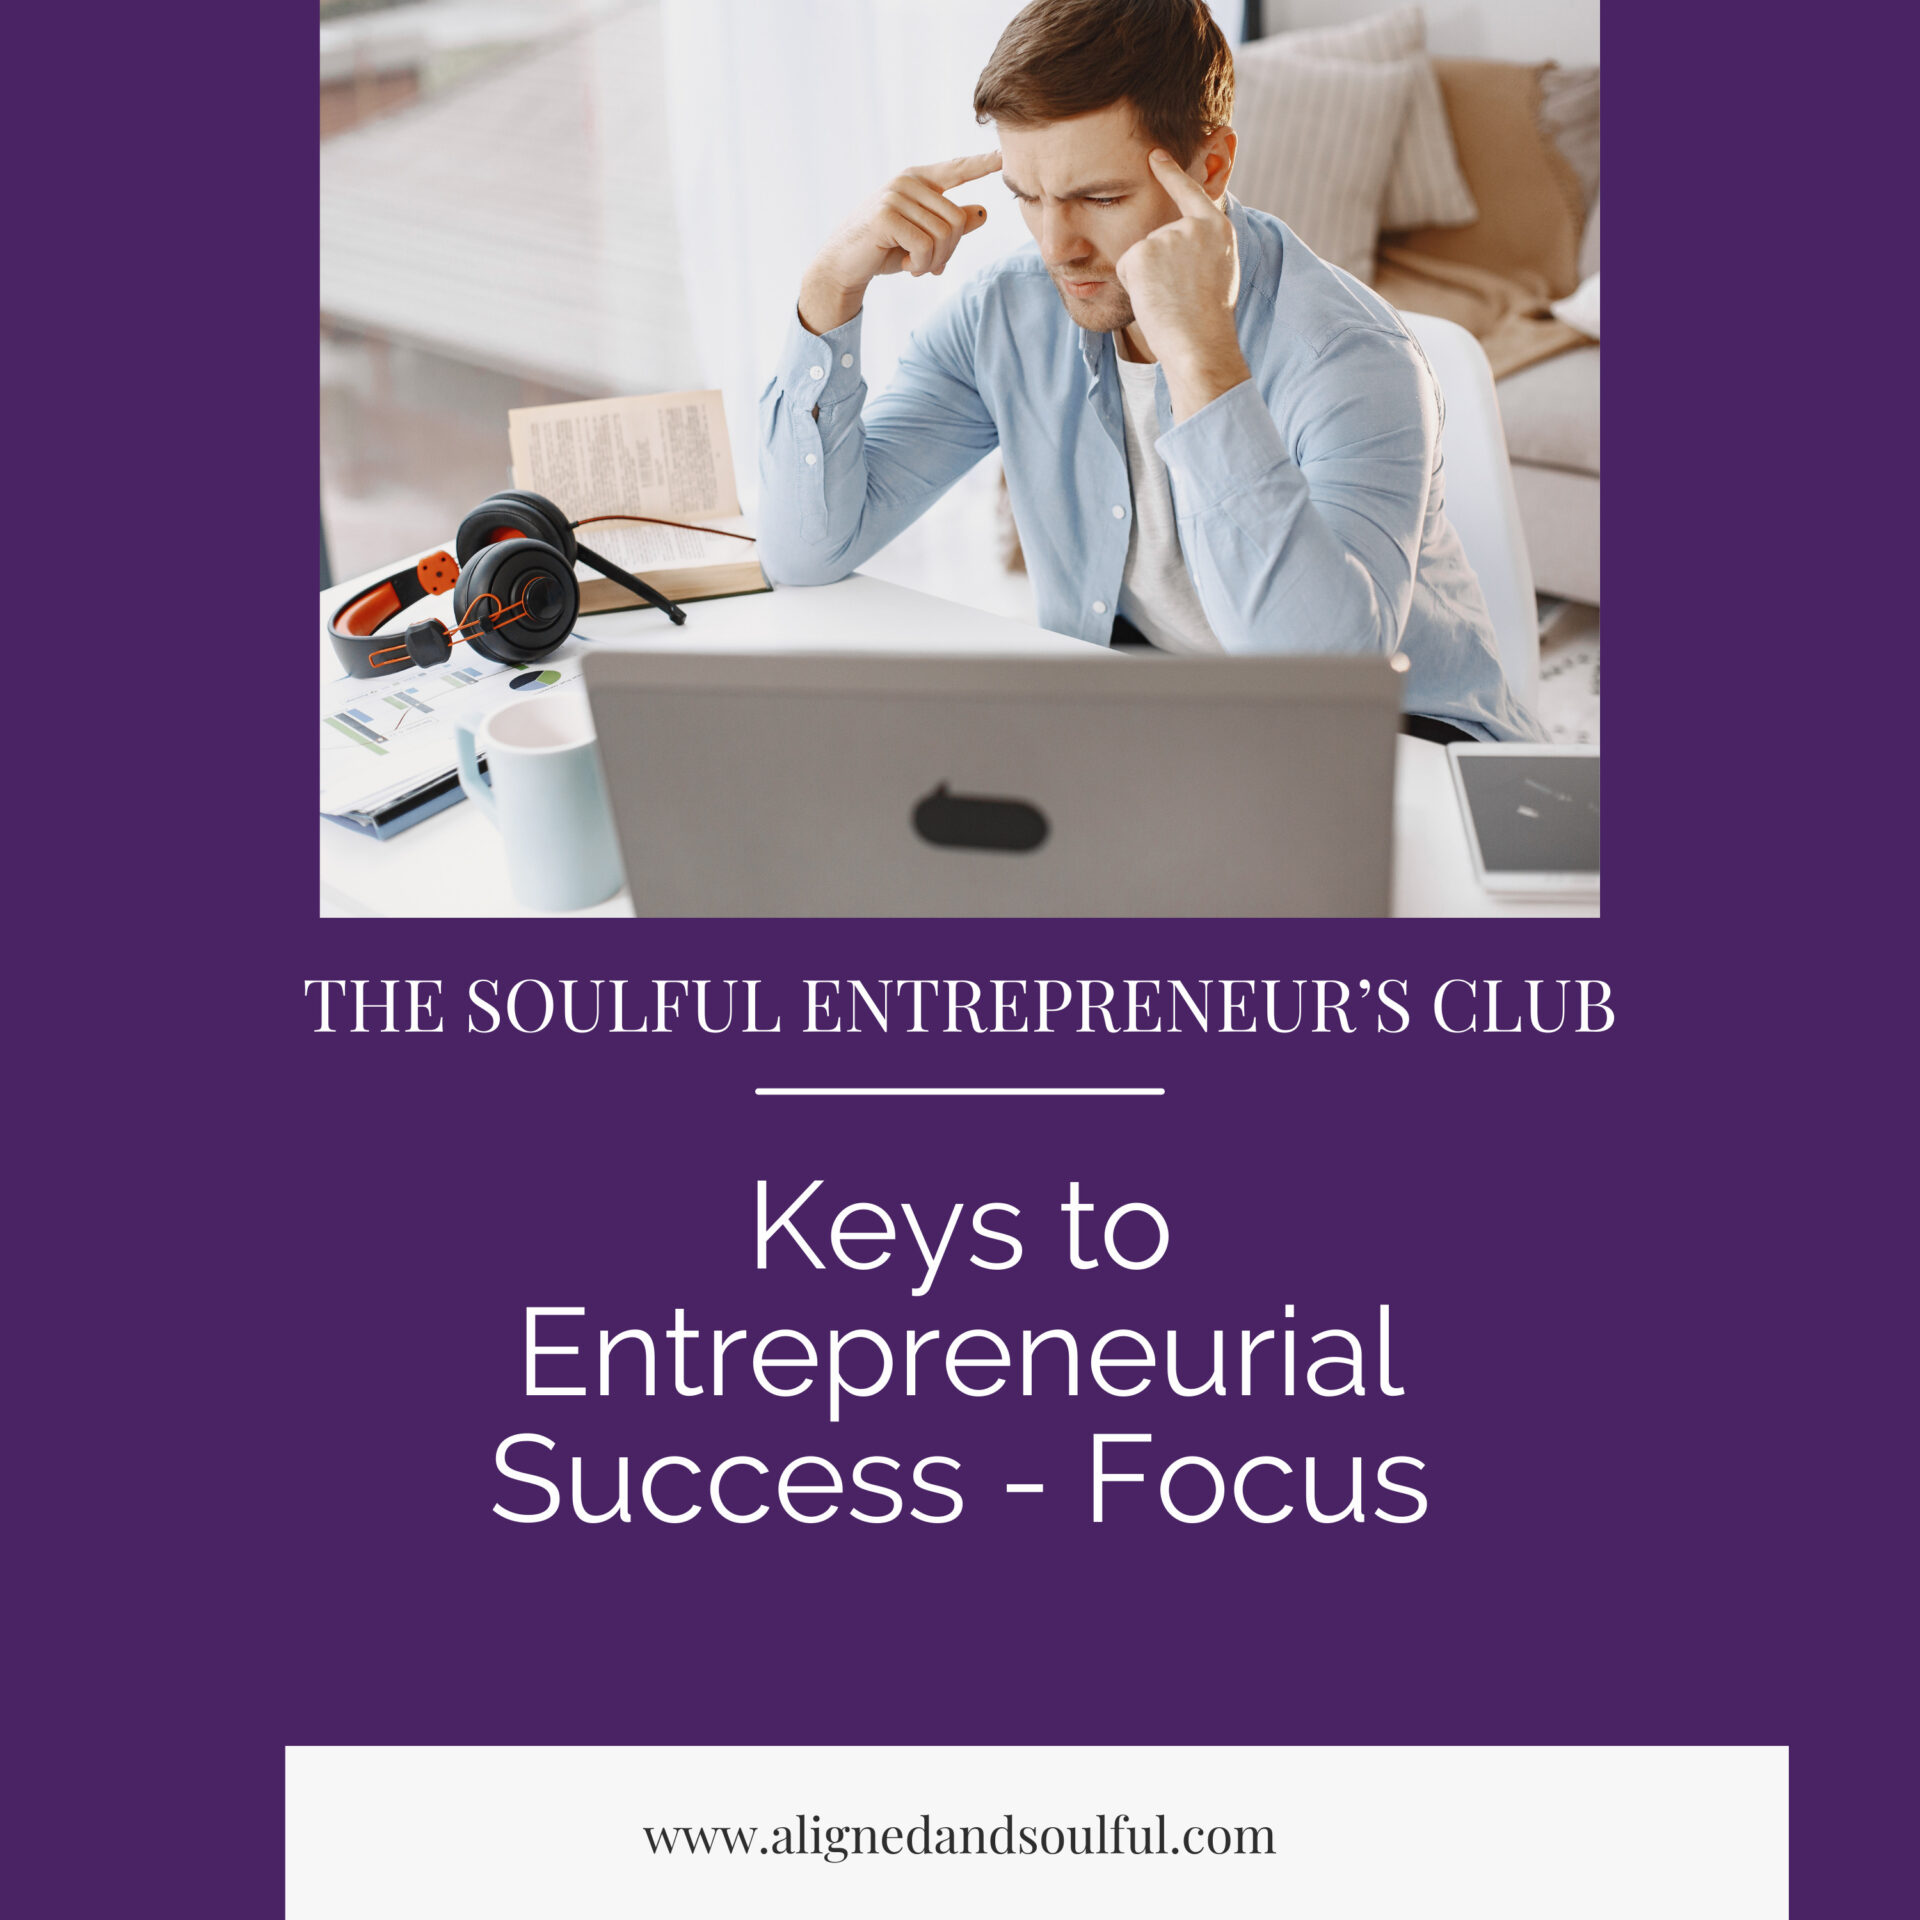 Keys to Entrepreneurial Success - Focus